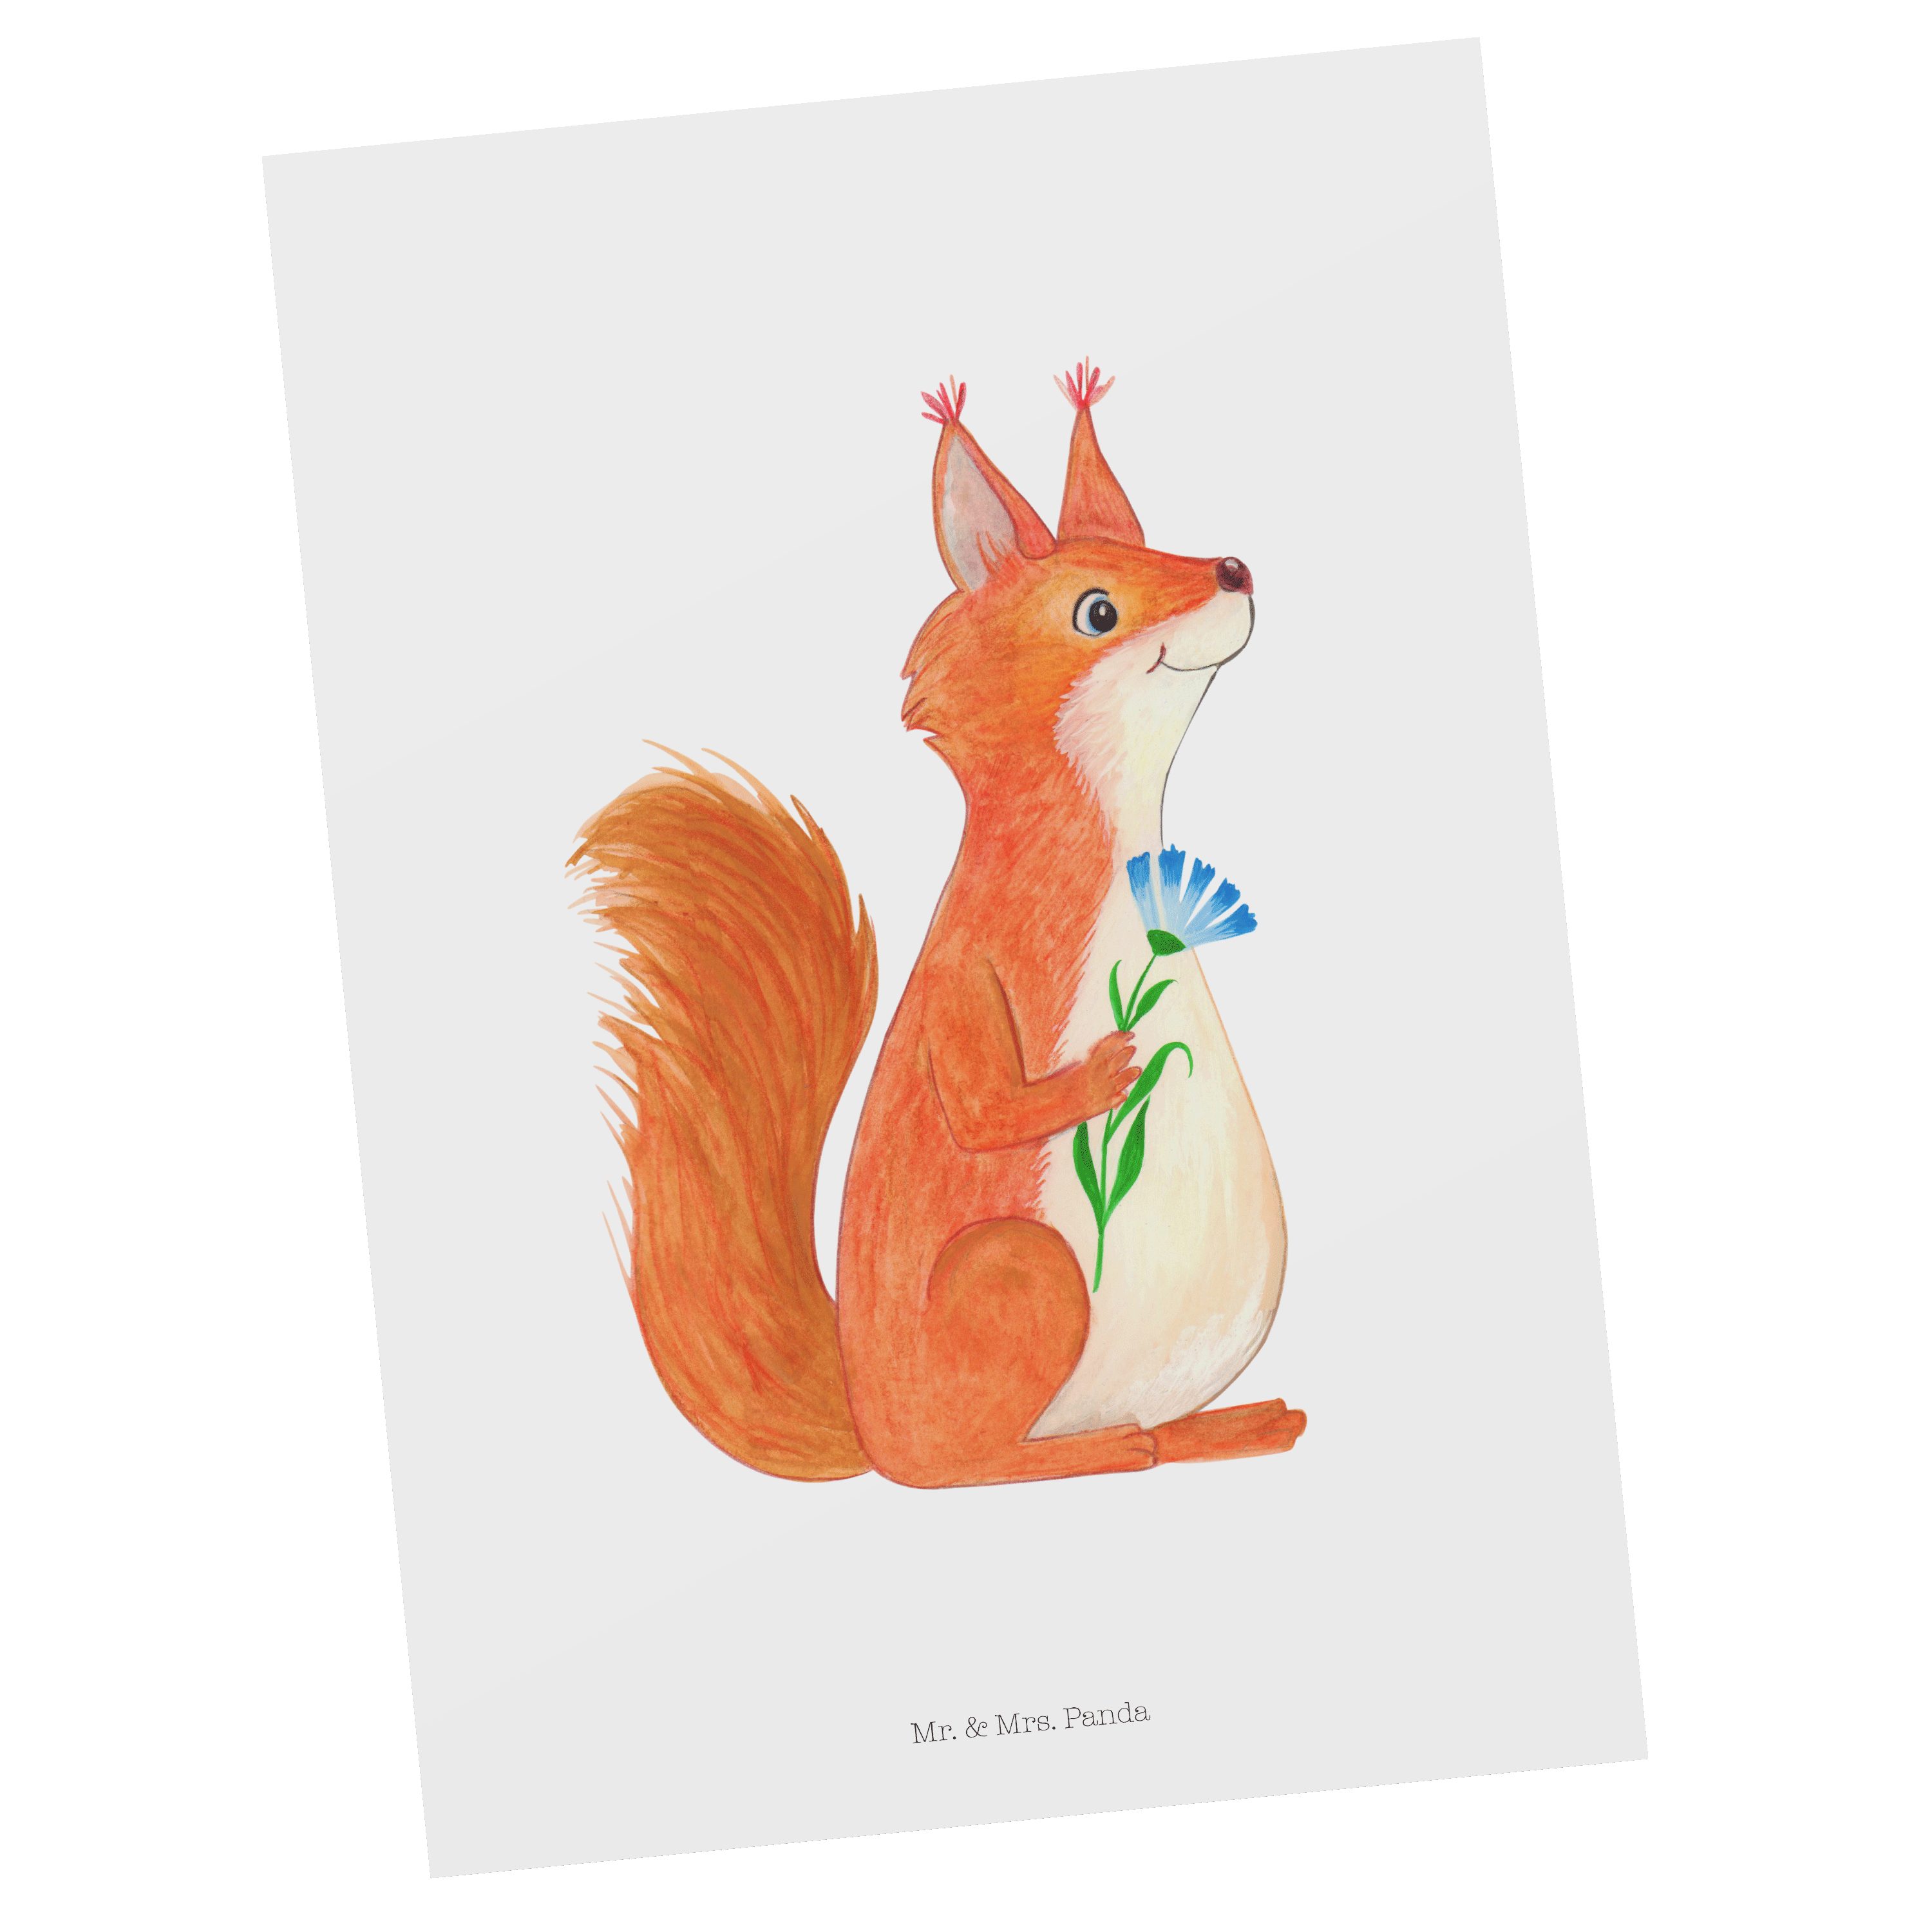 Mr. & Mrs. Panda Postkarte Eichhörnchen Blume - Weiß - Geschenk, Ansichtskarte, Geburtstagskarte